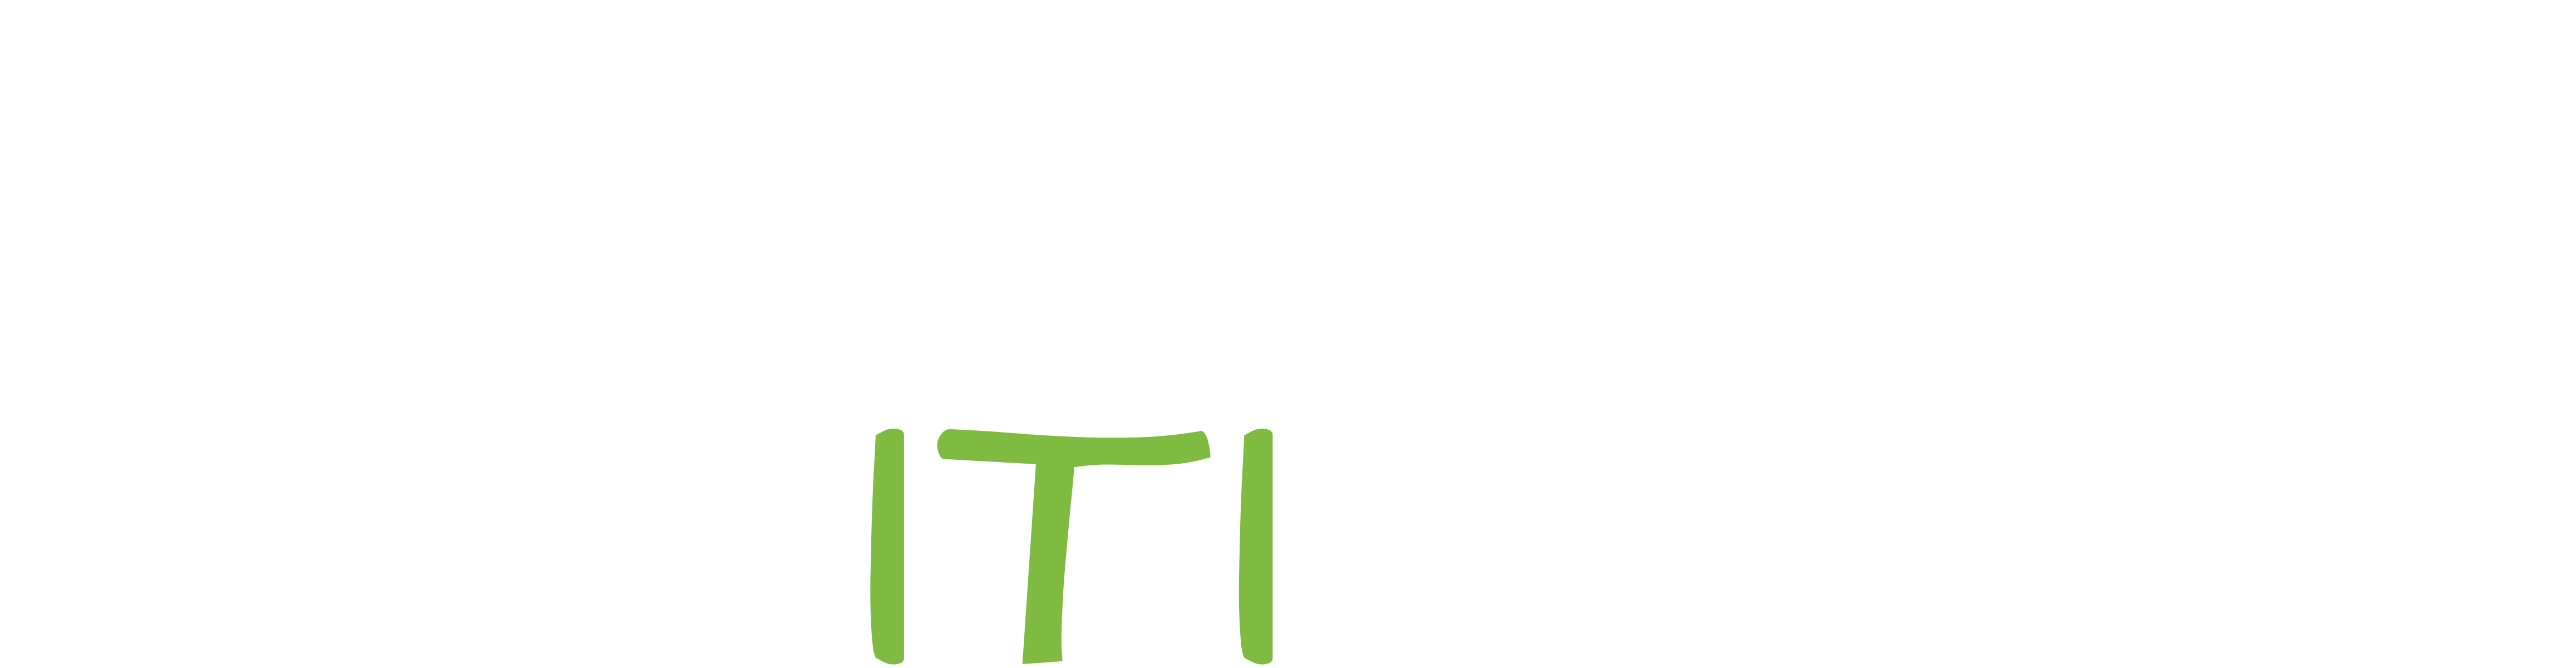 cITIcar Logo